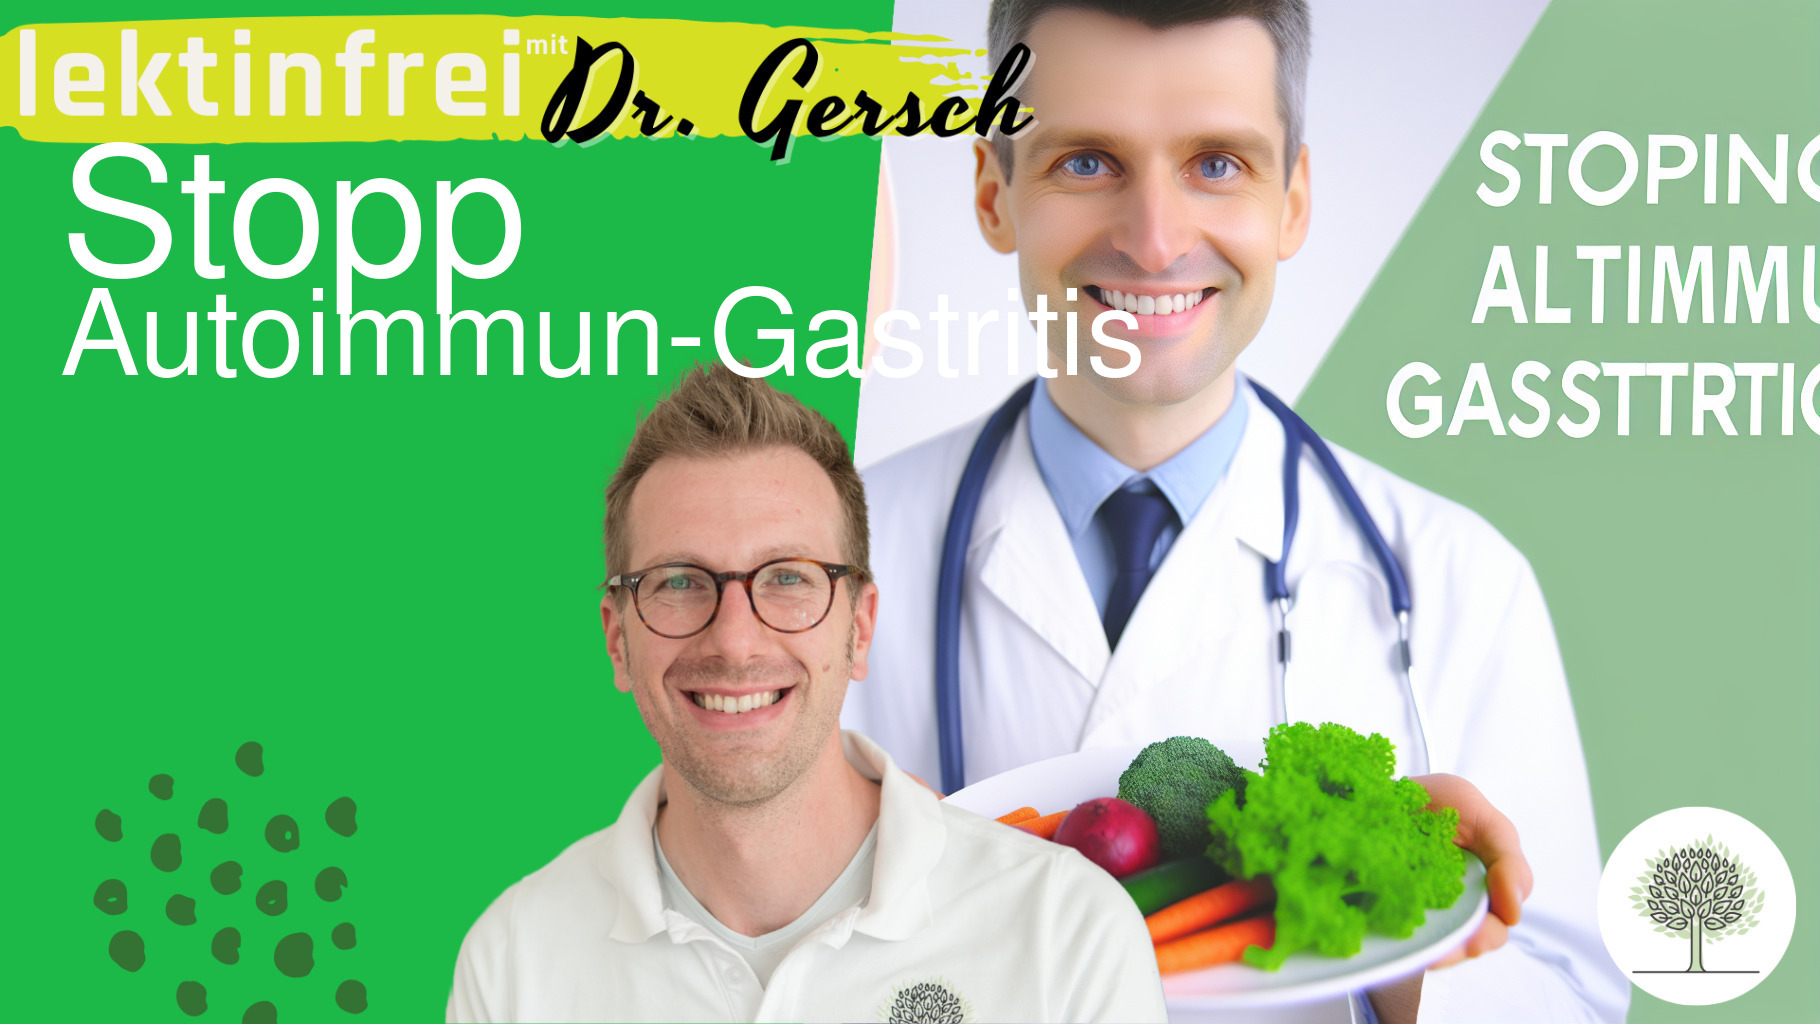  Autoimmun-Gastritis und lektinfreie Ernährung